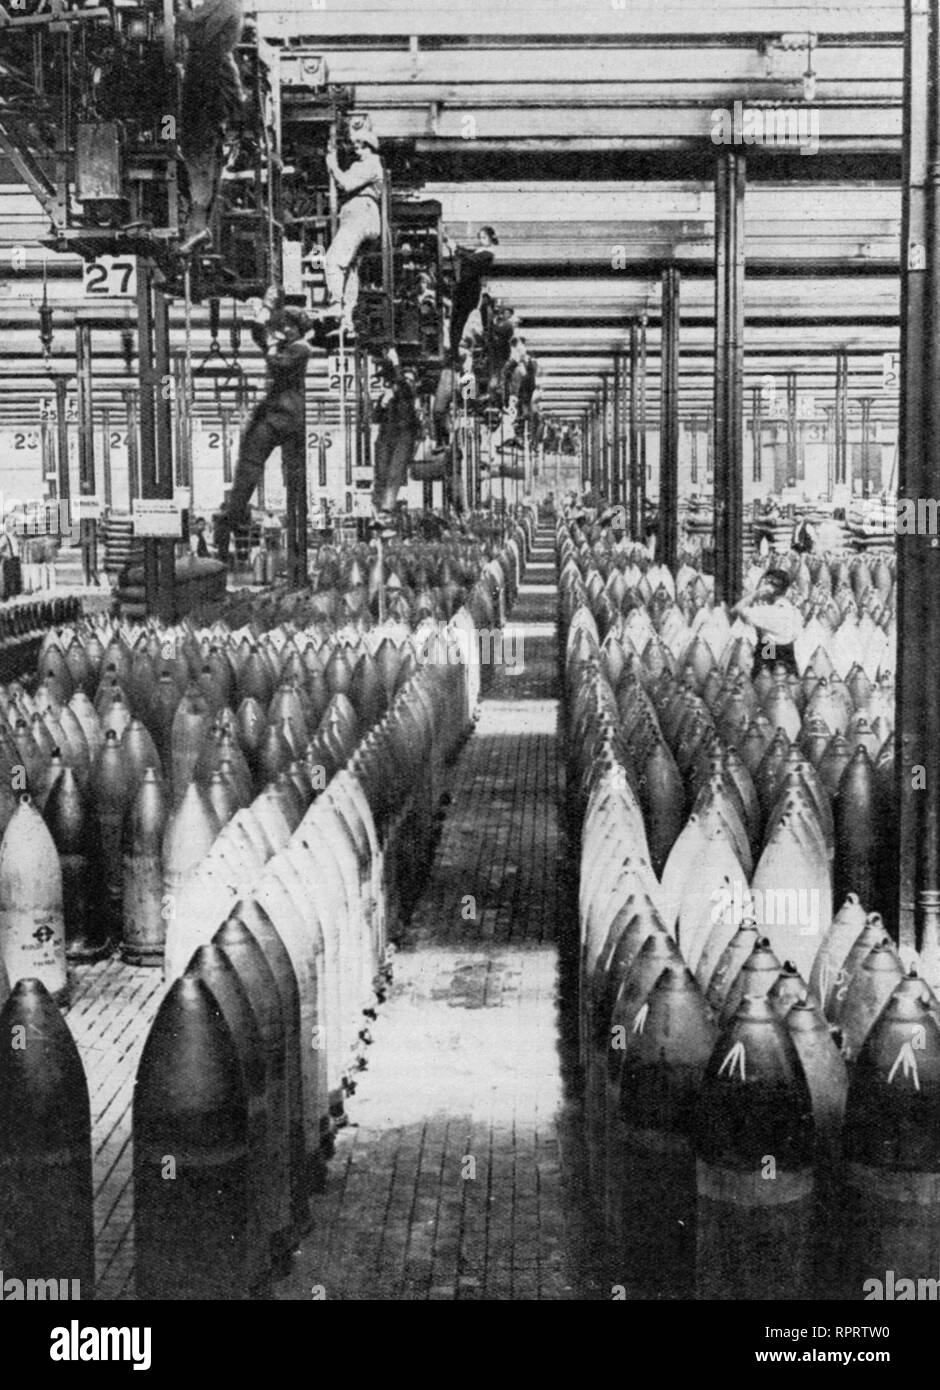 Donne al lavoro durante la prima guerra mondiale, luglio 1917. Produzione di munizioni, Chilwell, Nottinghamshire, Inghilterra, luglio 1917. "Gru ragazze" al lavoro presso la National Filling Factory di Chilwell. Le munizioni erano donne britanniche impiegate nelle fabbriche di munizioni durante la prima guerra mondiale. Foto Stock